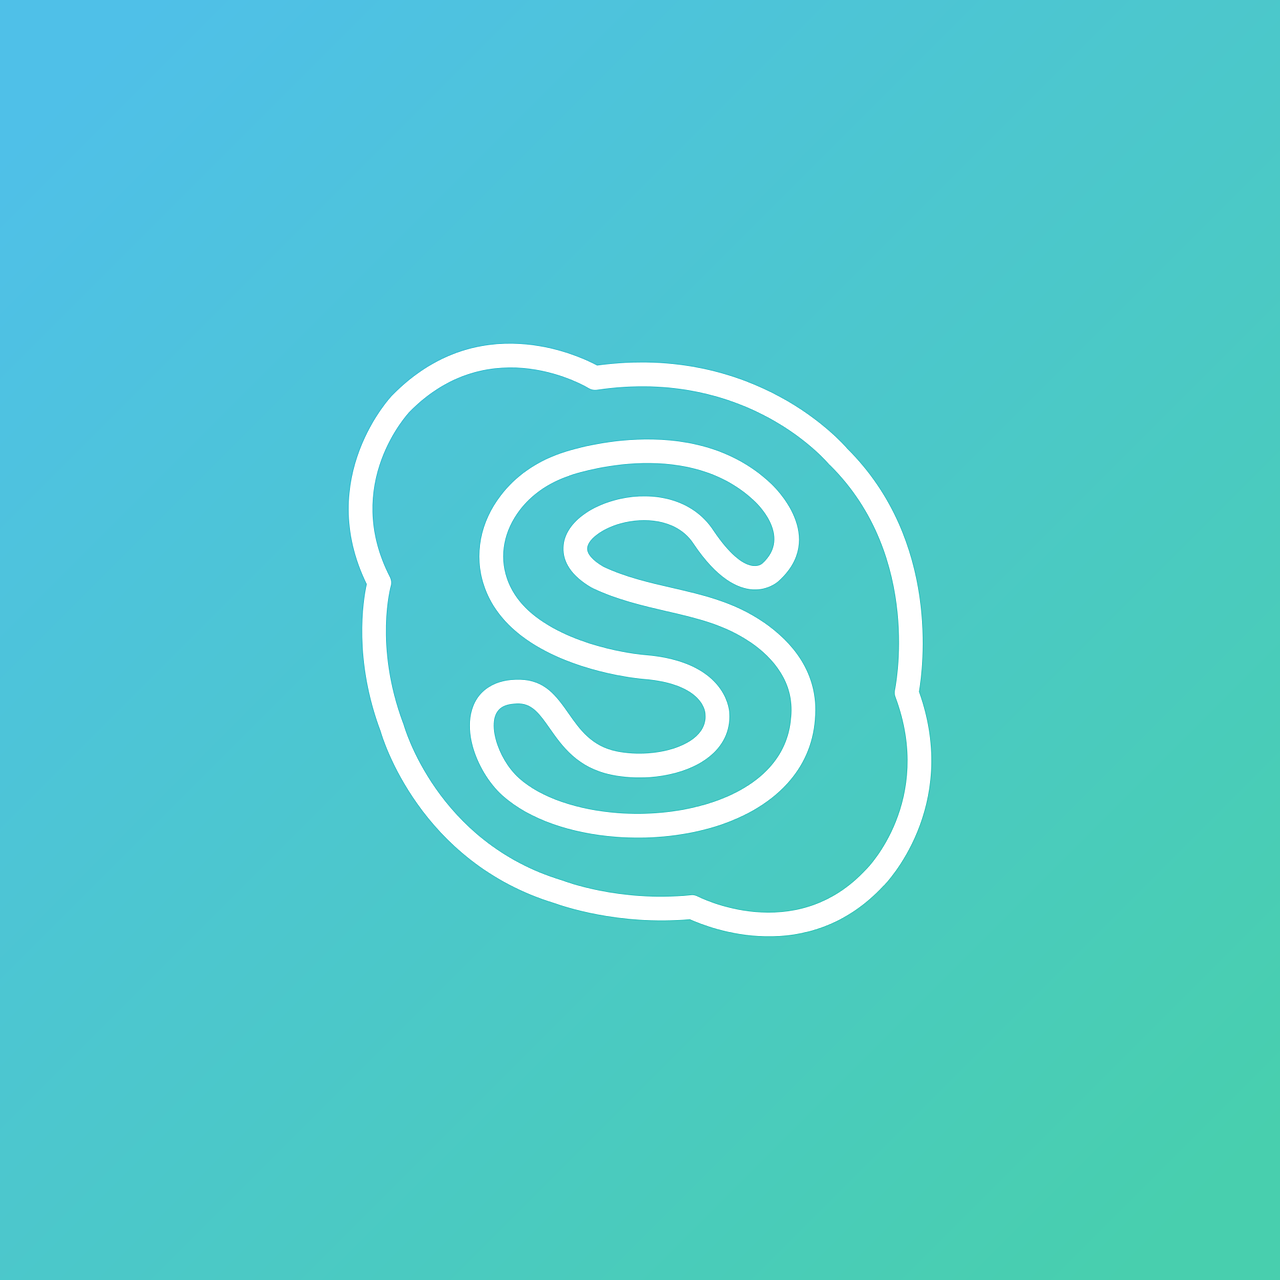 Skype,  Skype Ikona,  Skype Logotipas,  Skype Simbolis,  Socialiniai Tinklai,  Tinklai,  Internetas,  Tinklas,  Socialinė,  Socialinis Tinklas